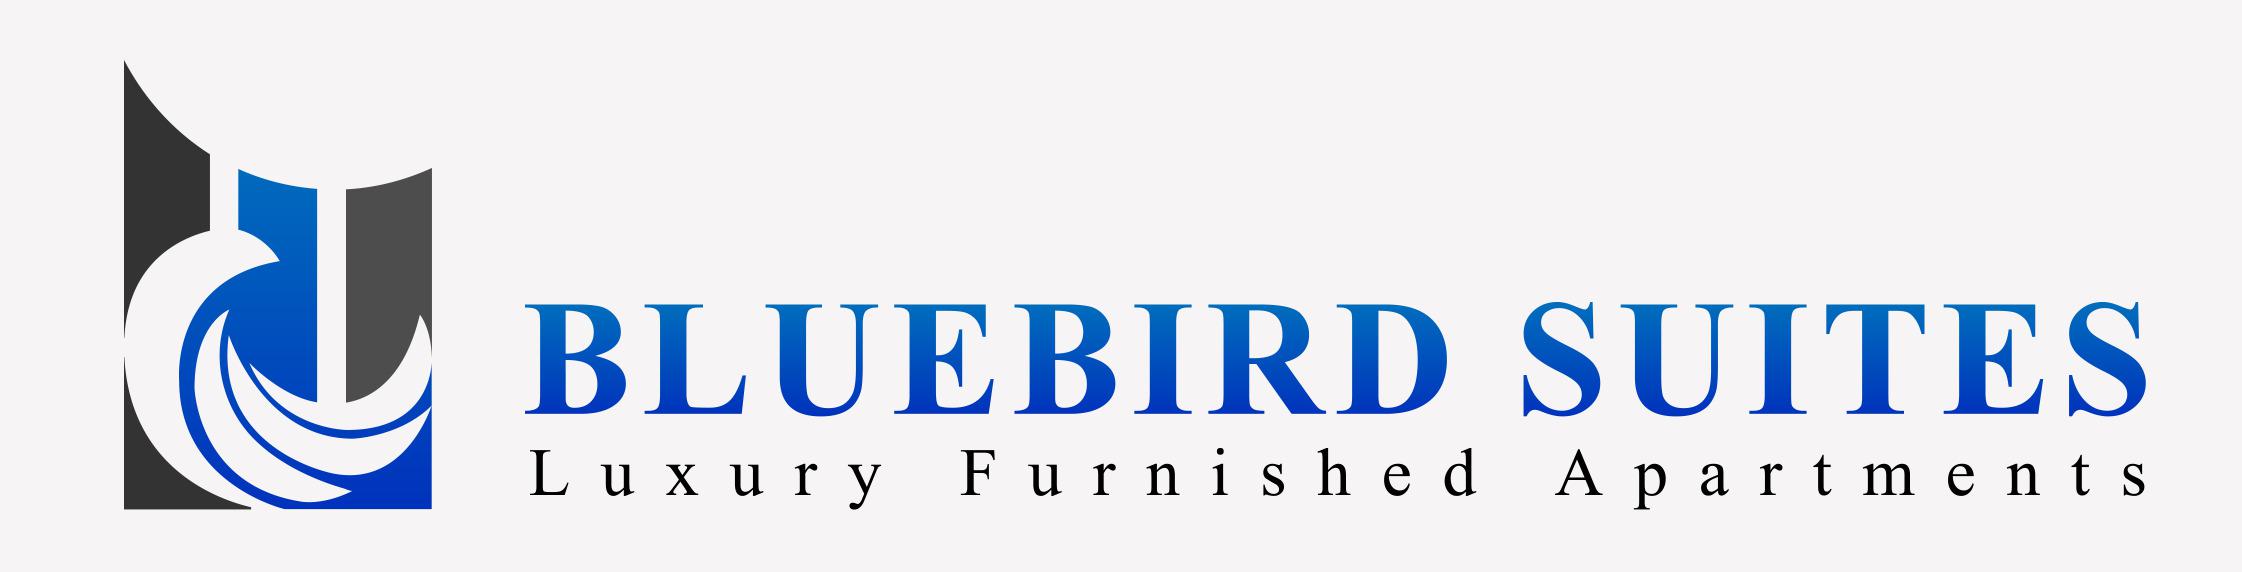 Bluebird Suites